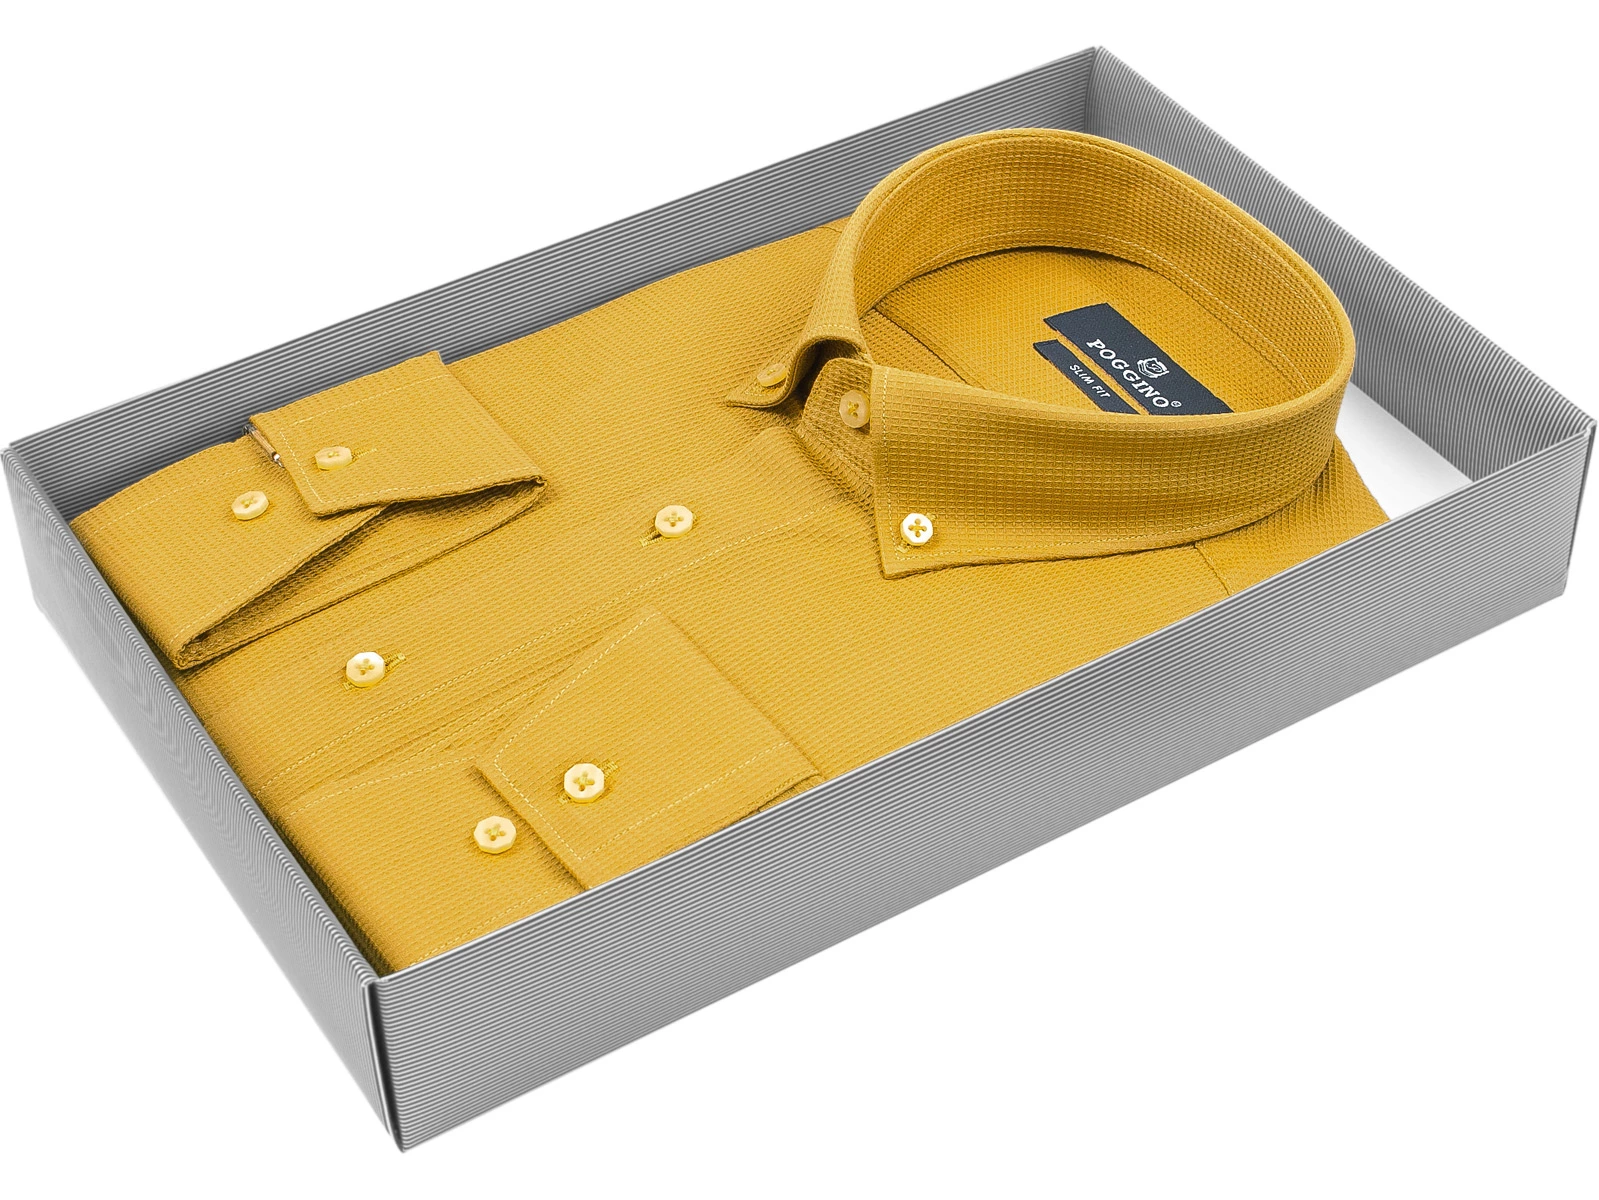 Мужская рубашка Poggino приталенный цвет горчичный однотонный купить в Москве недорого